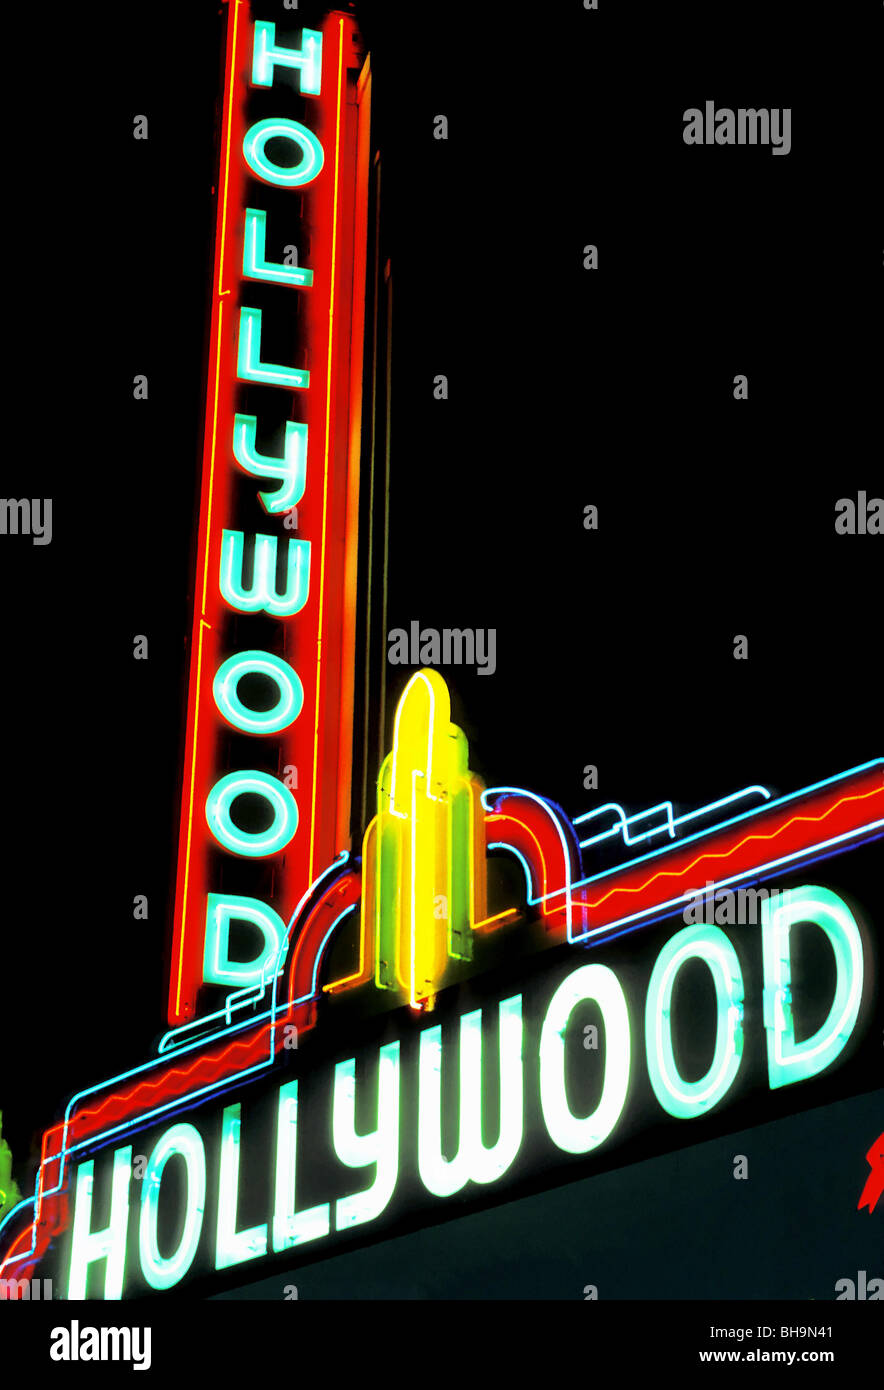 Le chapiteau de la salle de cinéma de Hollywood, est convenablement situé sur Sunset Boulevard à Hollywood, Californie, USA. Banque D'Images